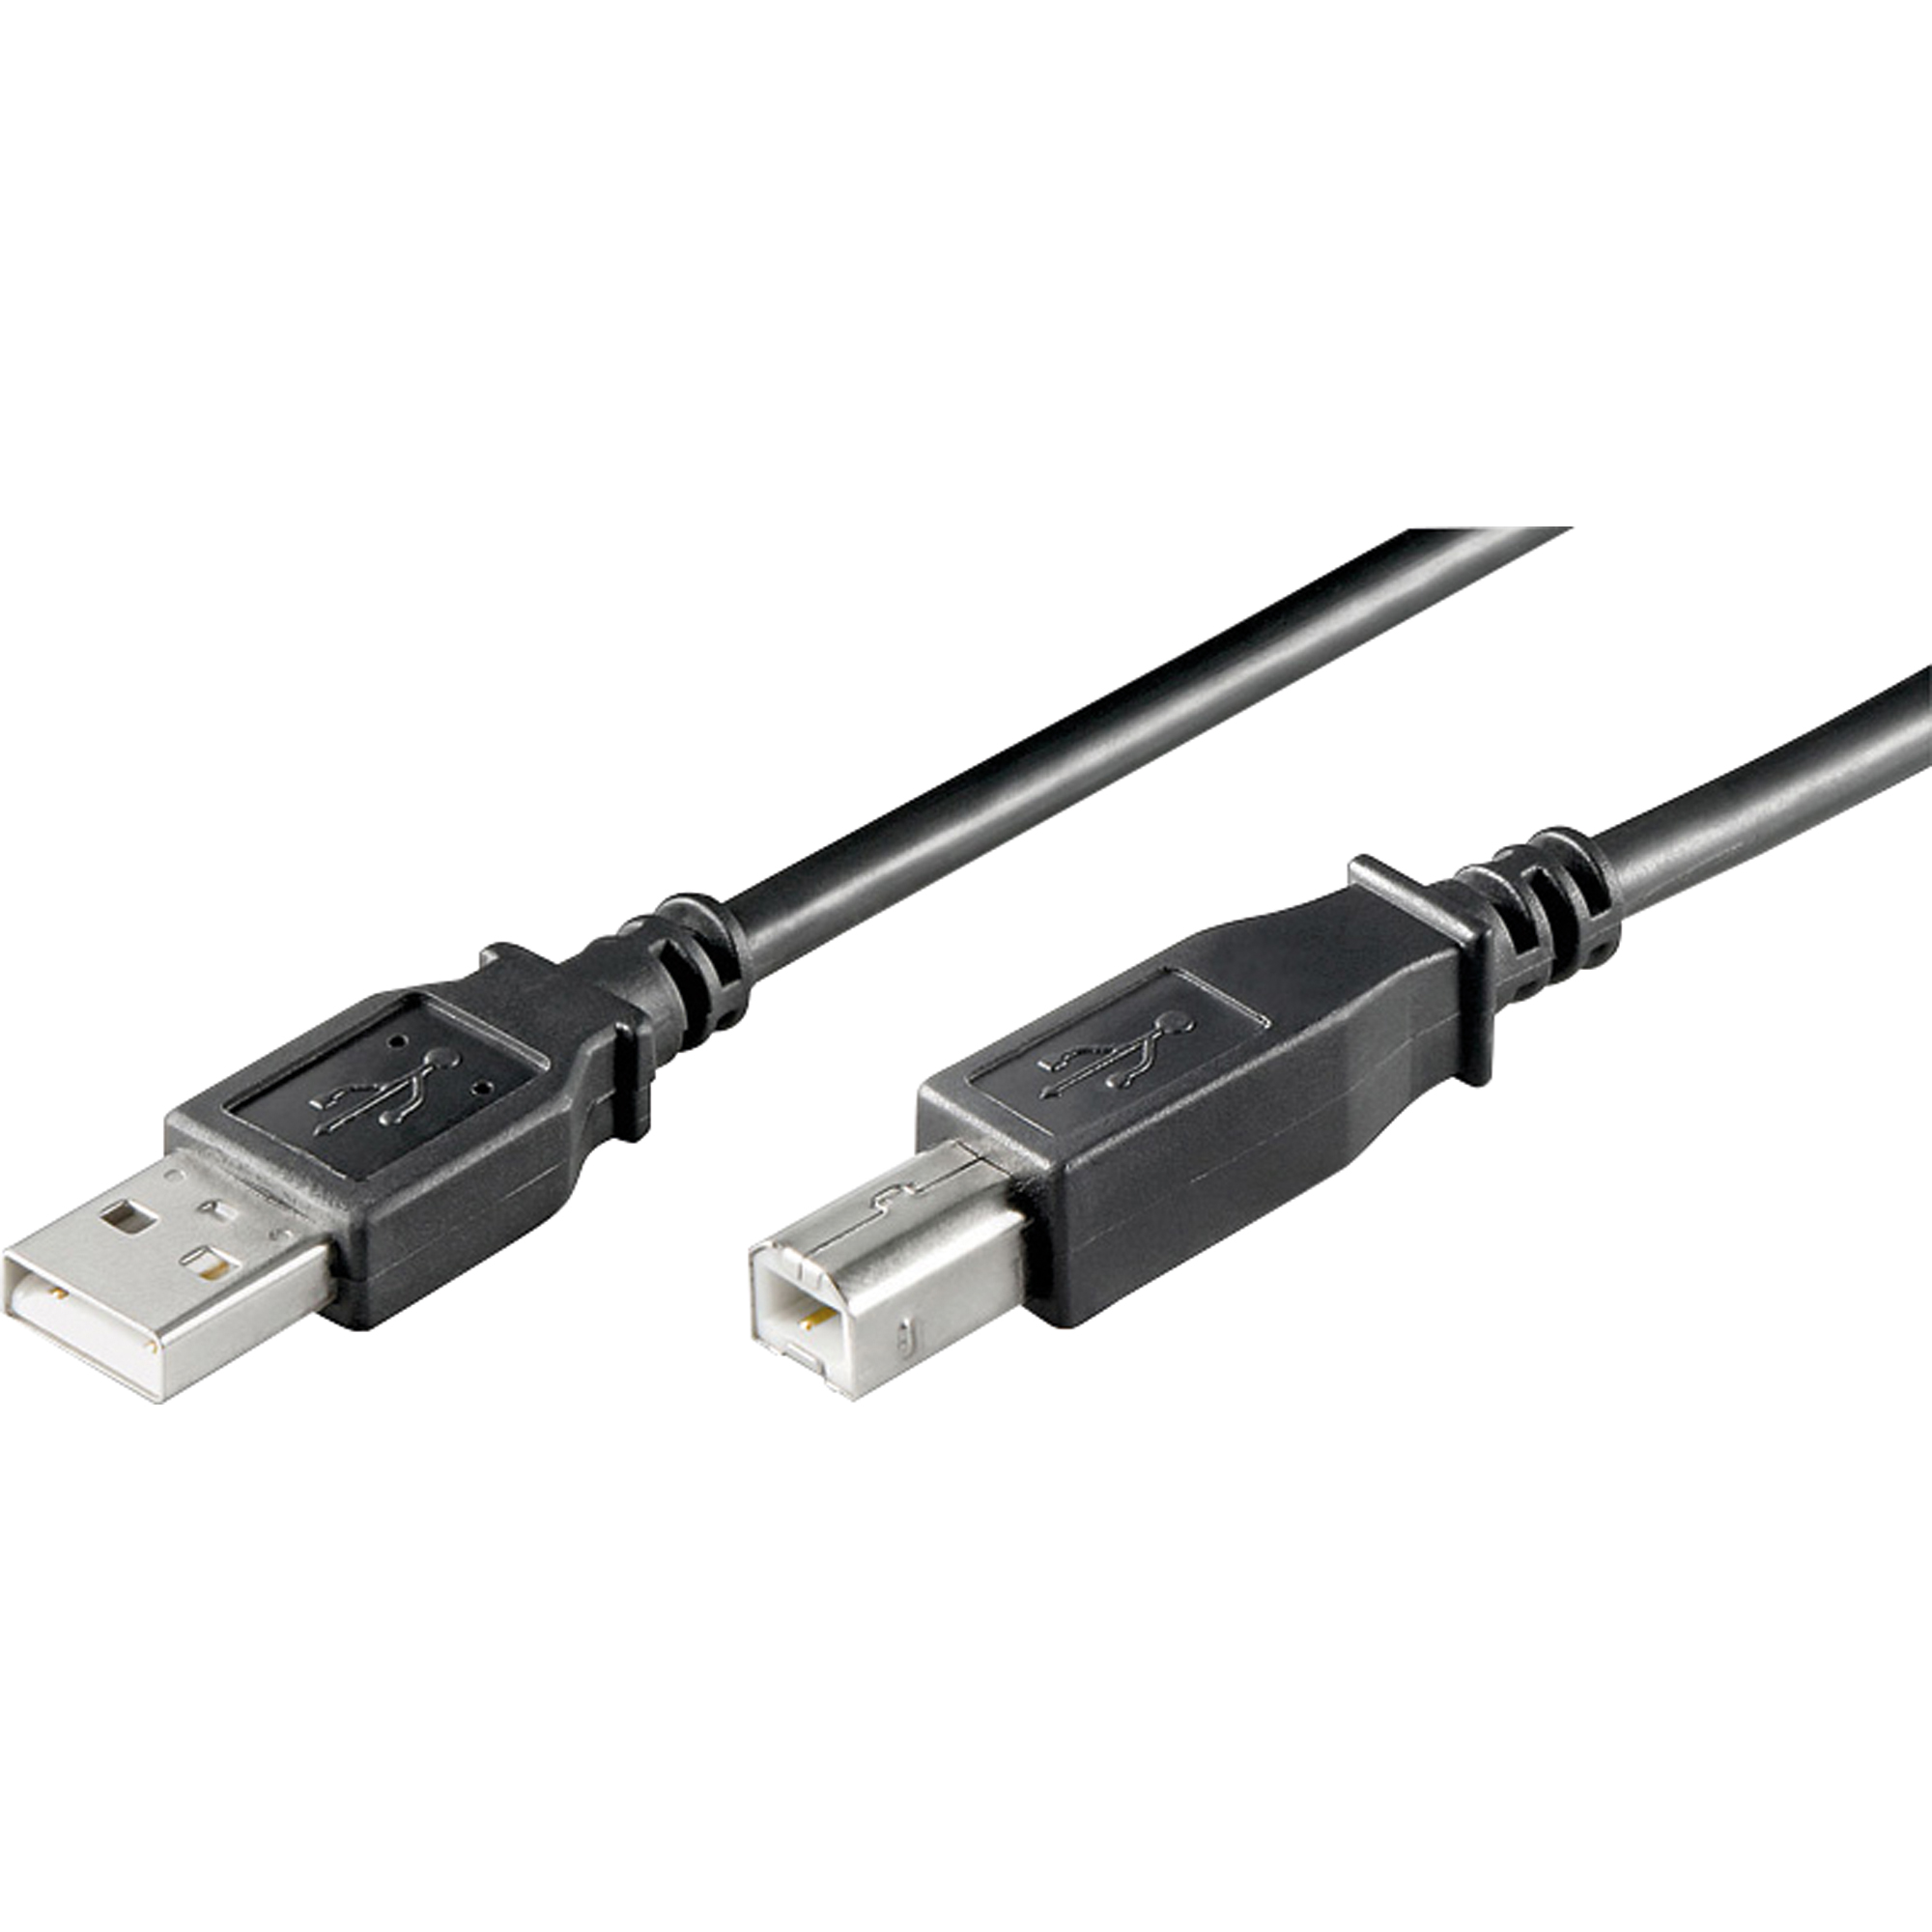 USB Kabel USB-A-Stecker/USB-B-Stecker USB 2.0 3 m